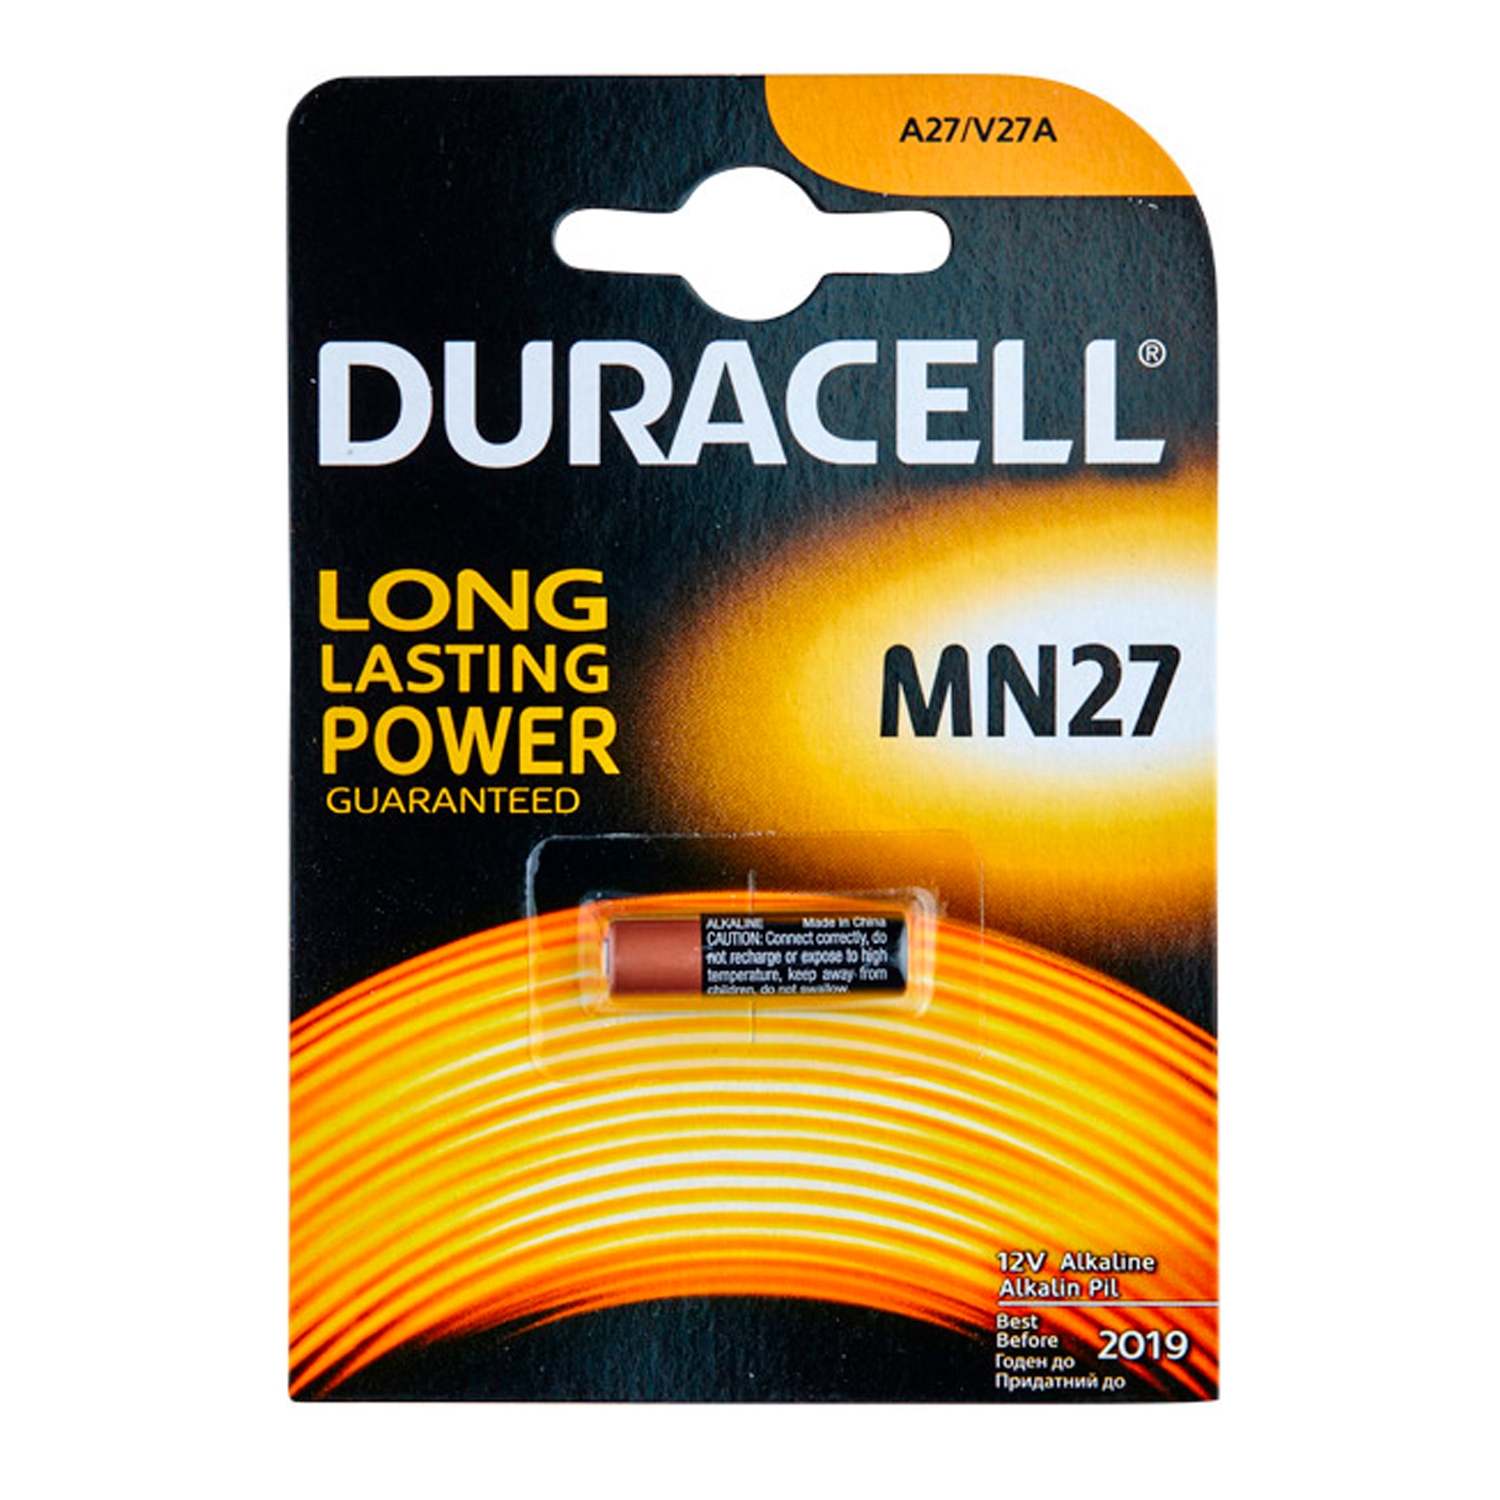 Duracell Duracell A27 12V Batteri - 1 stk. - Svart